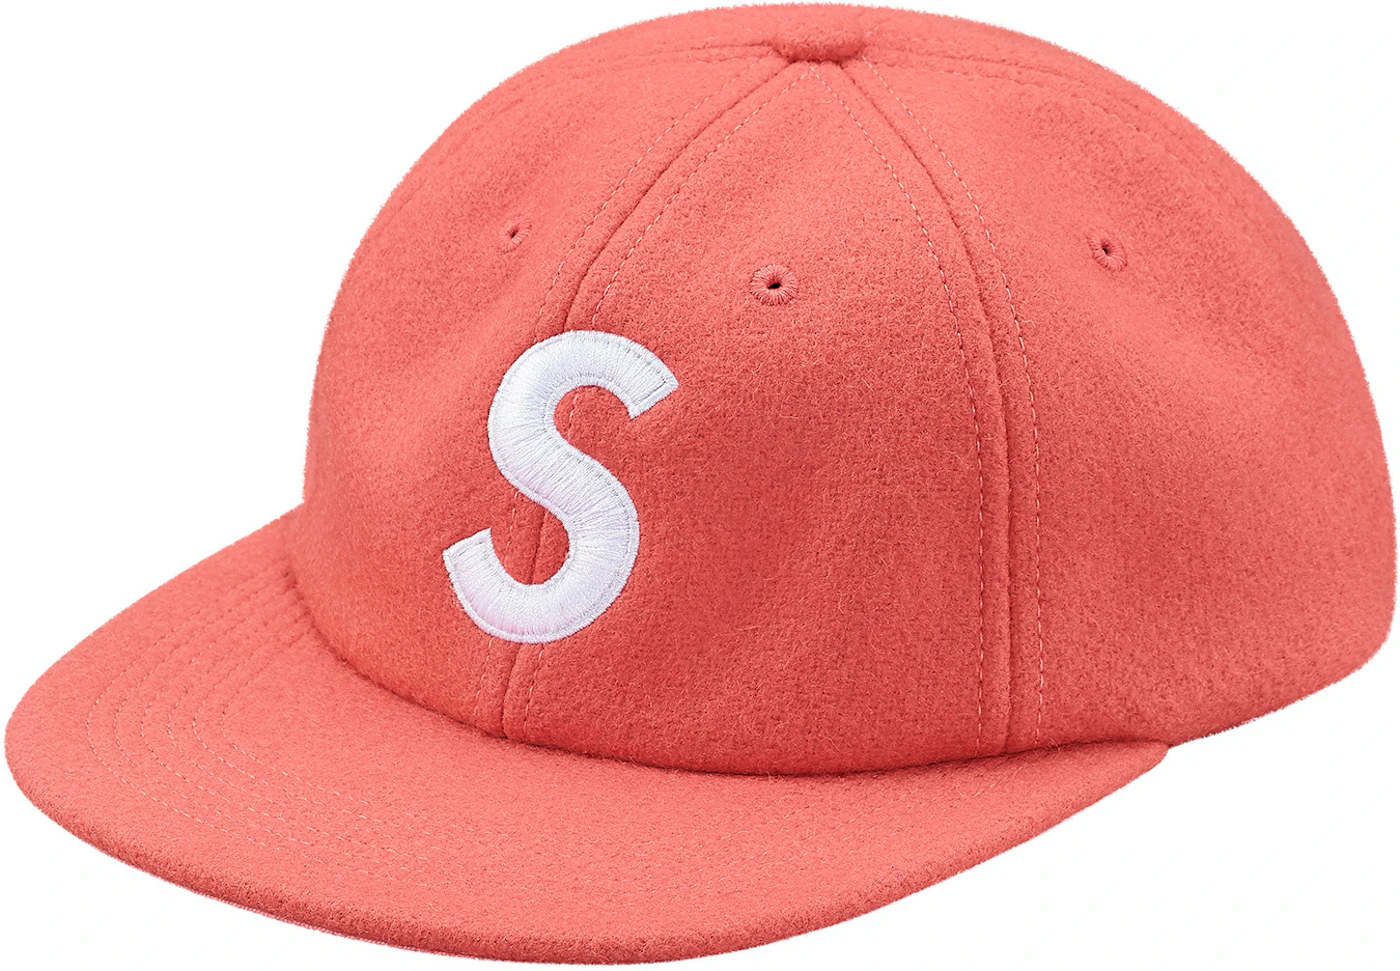 Supreme velvet S logo 6 panel hat , Very lightly